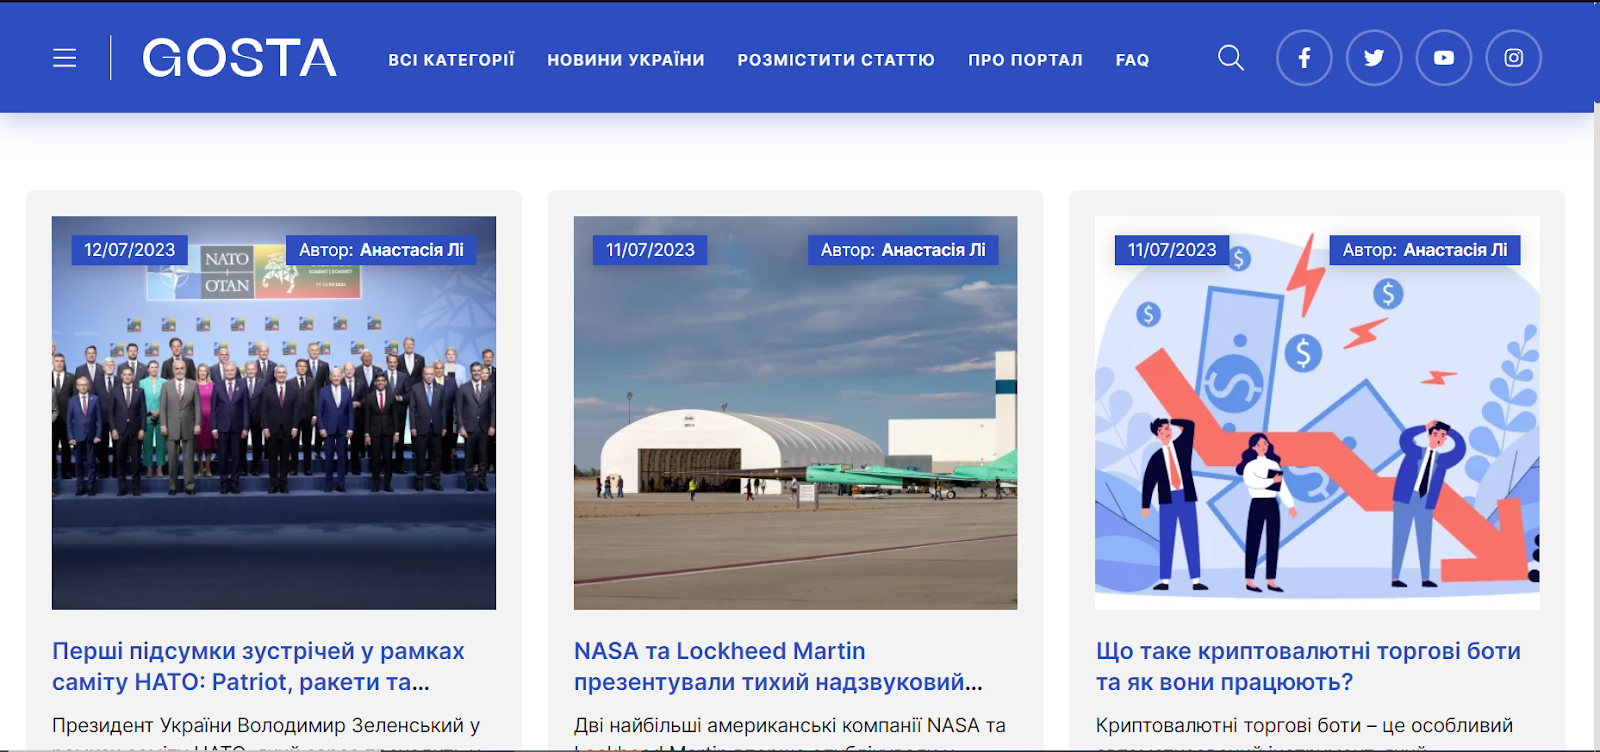 Всеукраїнський інформаційний портал Gosta.Media